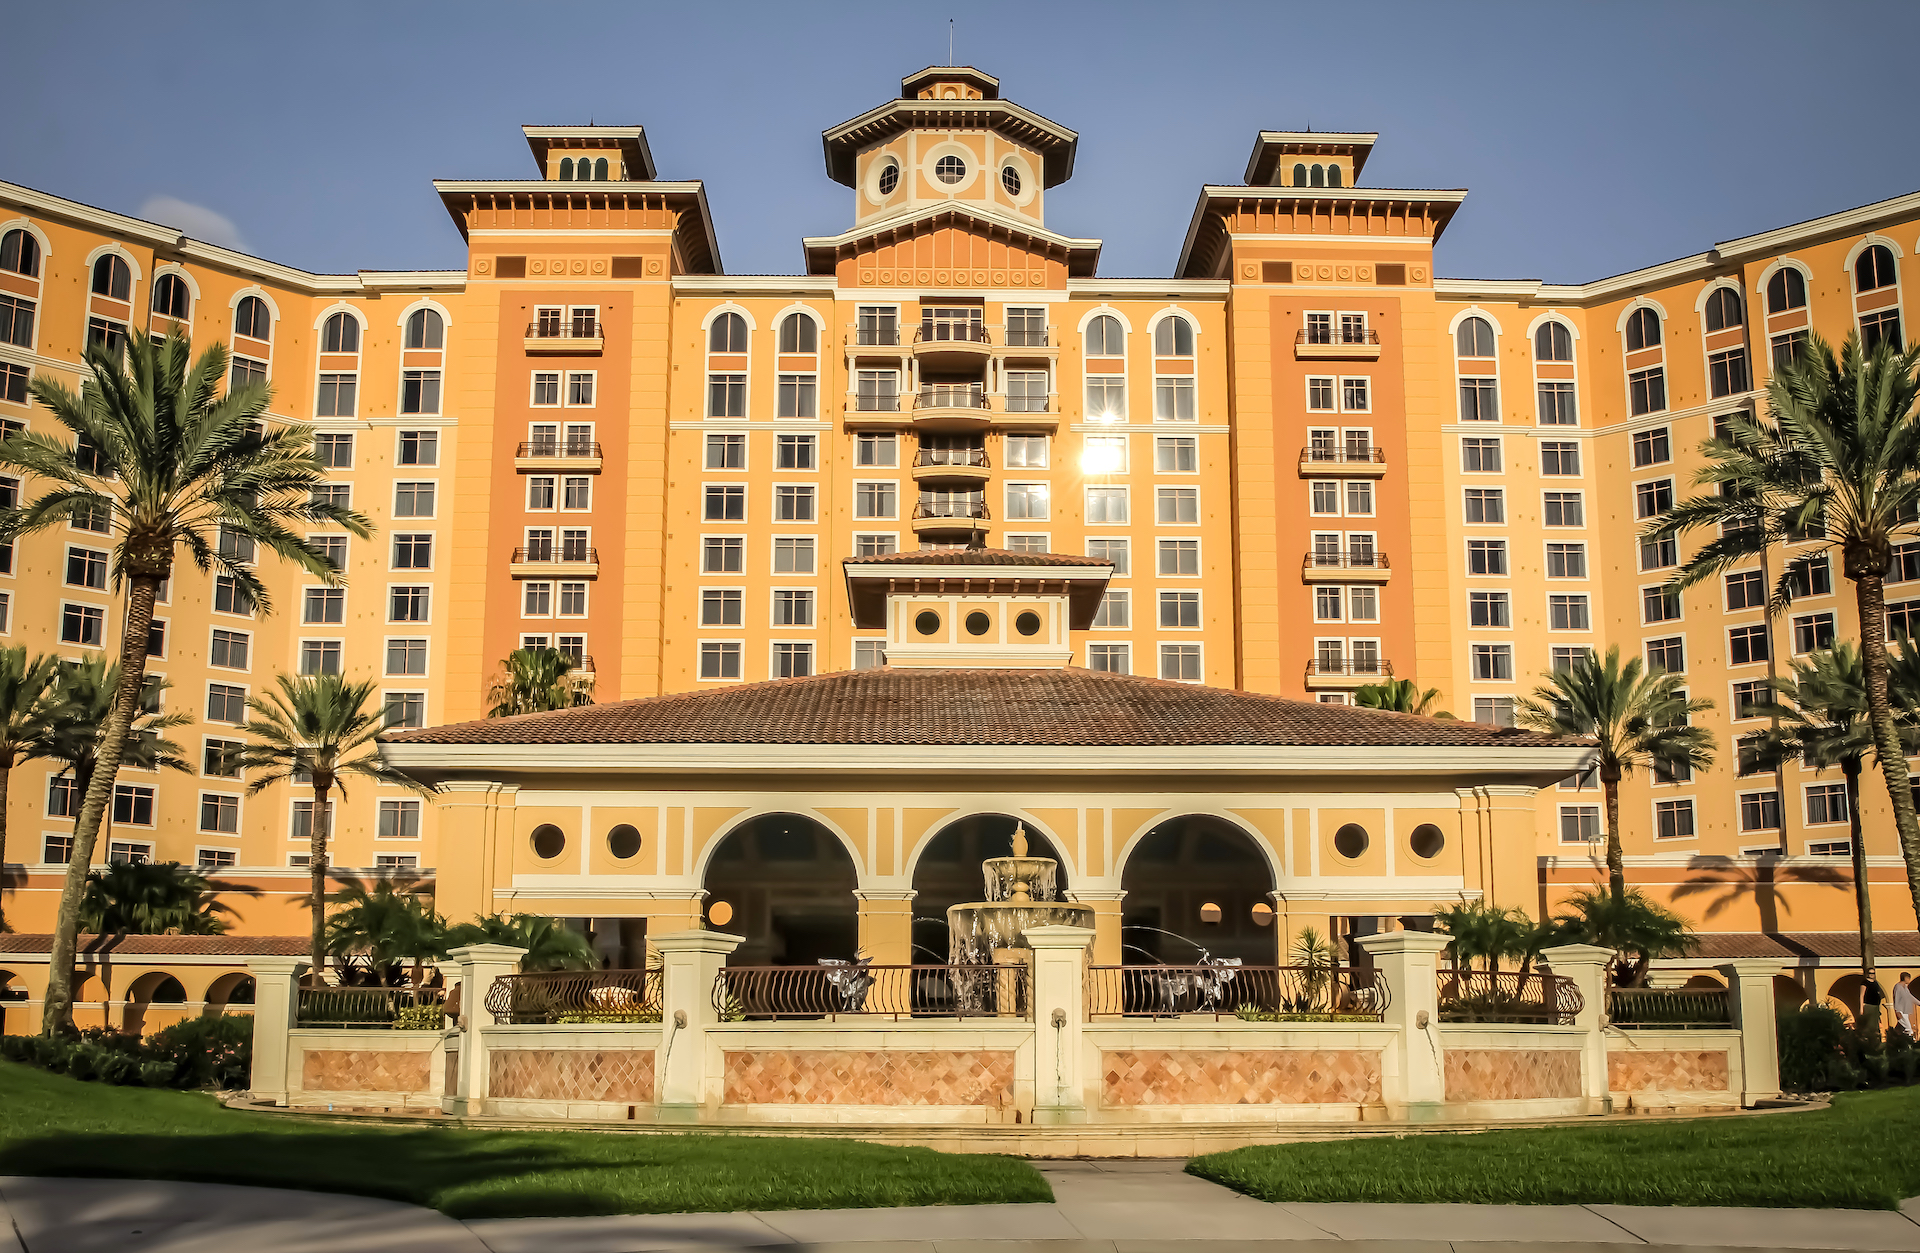 REVIEW Hotel Rosen Shingle Creek Orlando: enormemente atractivo